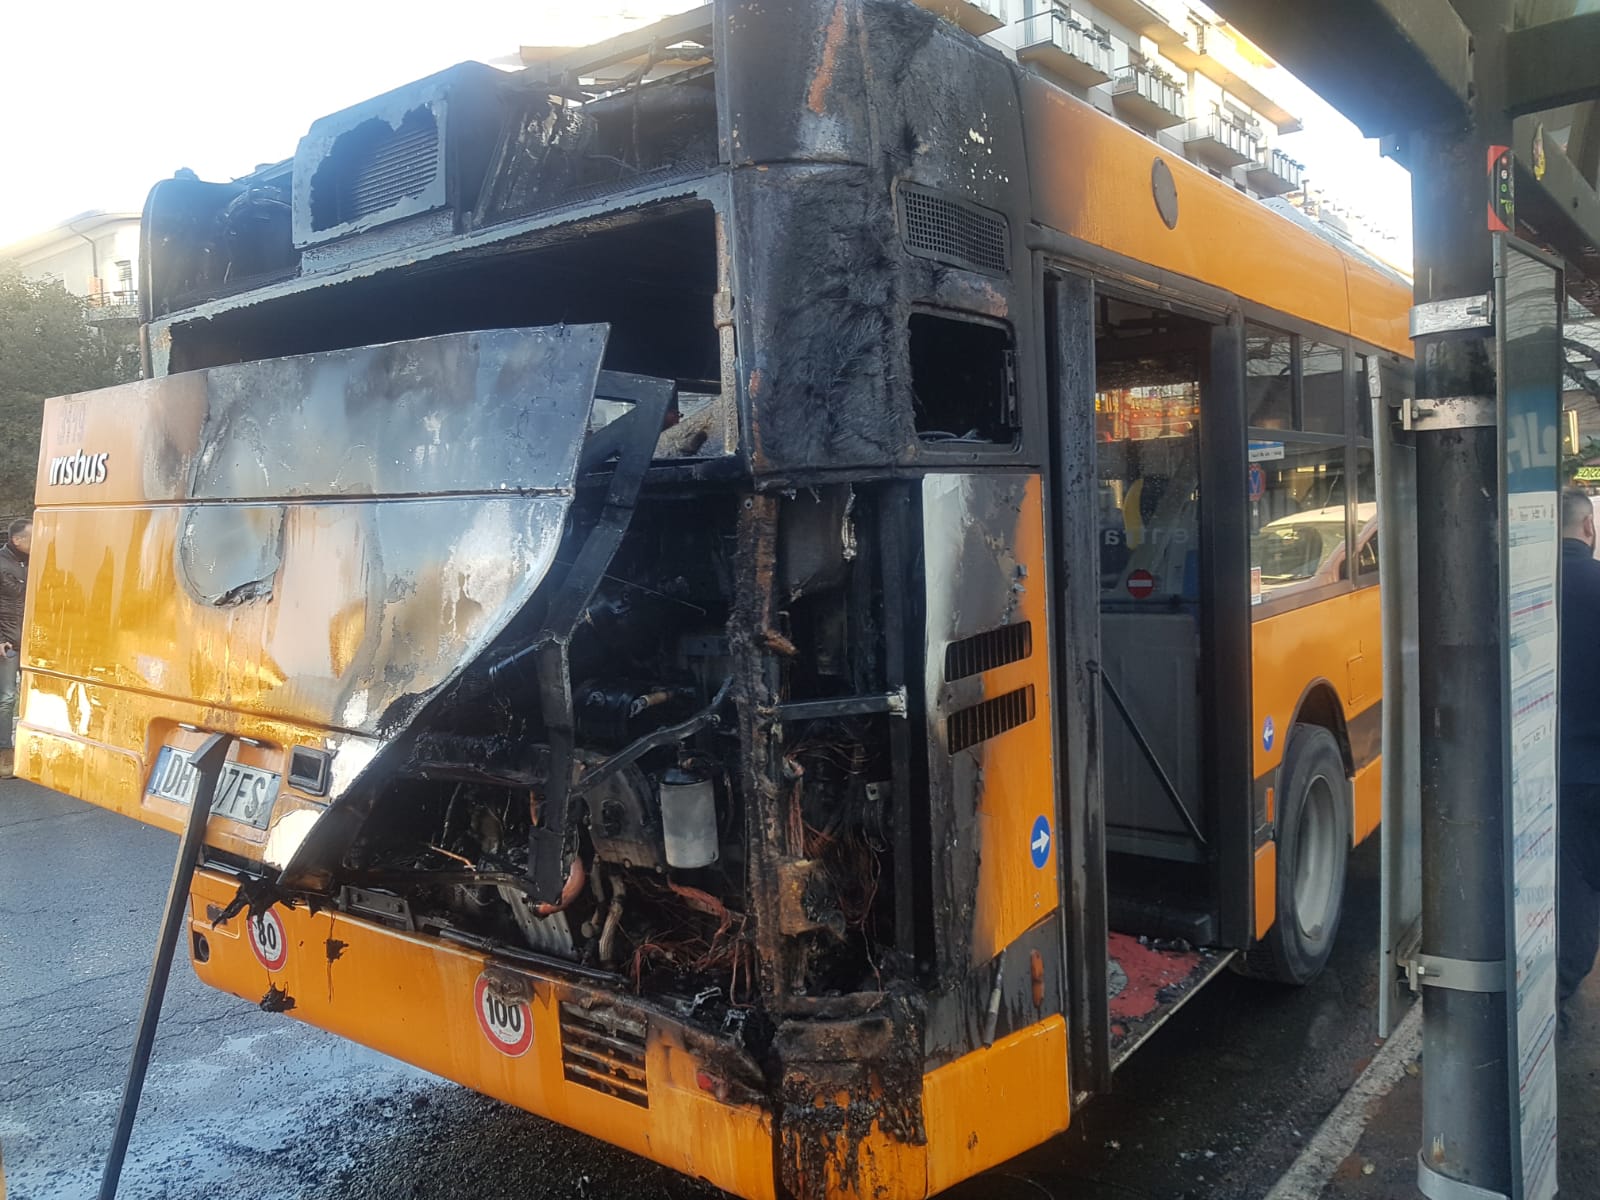 Bus in fiamme, Tiemme: “il mezzo ha 14 anni, revisionato e manutenuto. Grazie alla prontezza dell’autista. Un corto circuito all’origine del rogo”